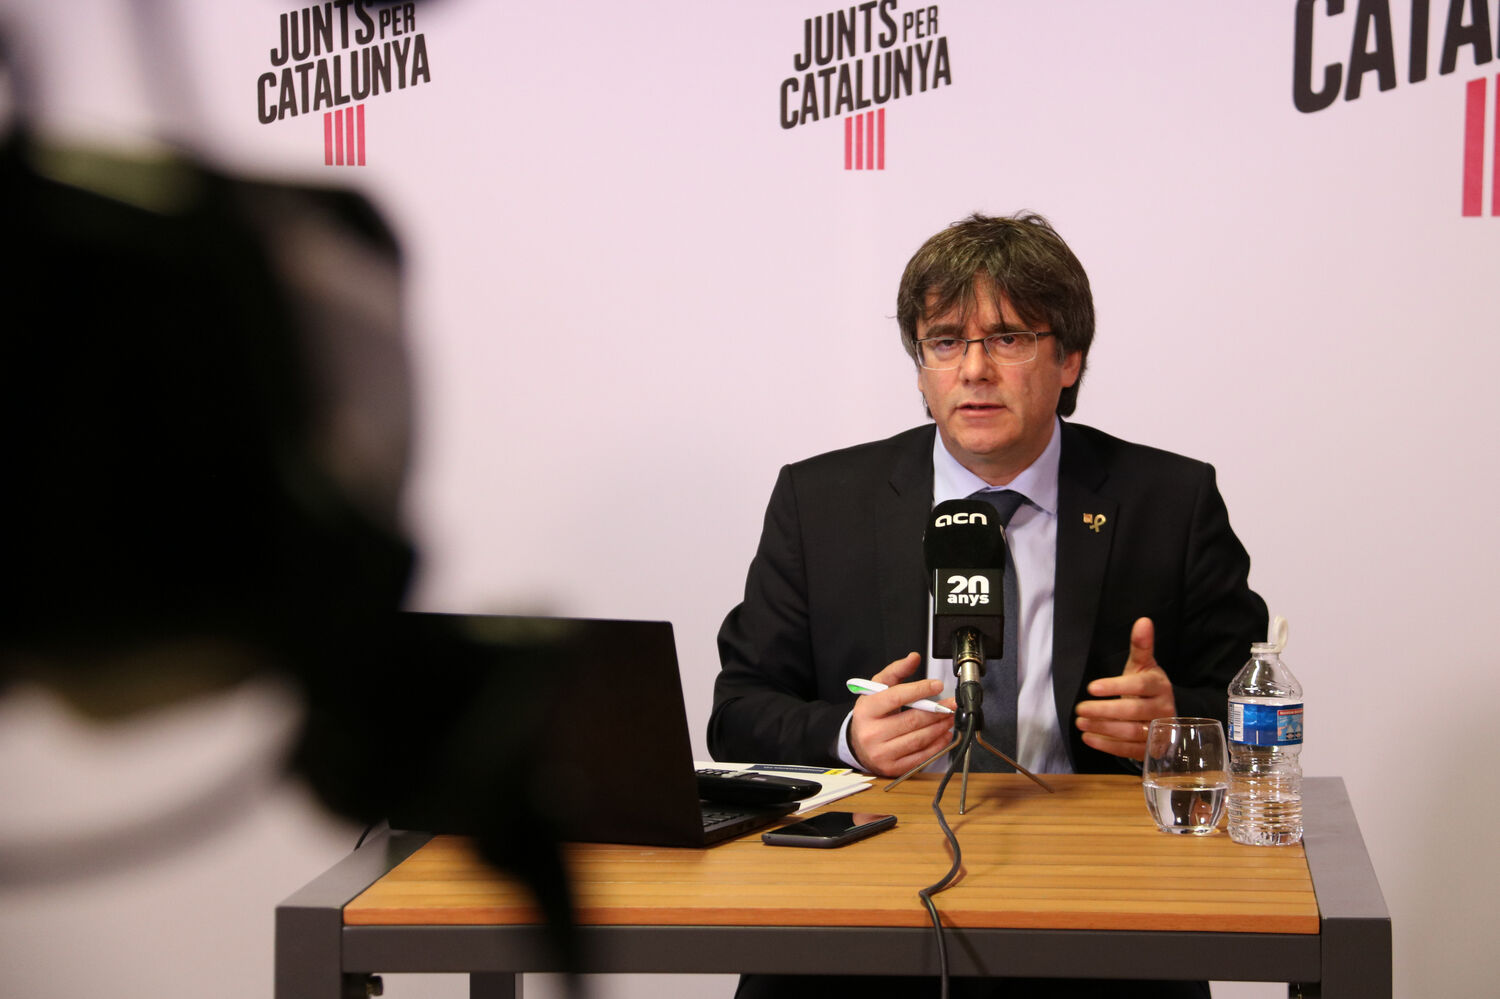 Eleições europeias: enquete dá vitória de Puigdemont em Barcelona